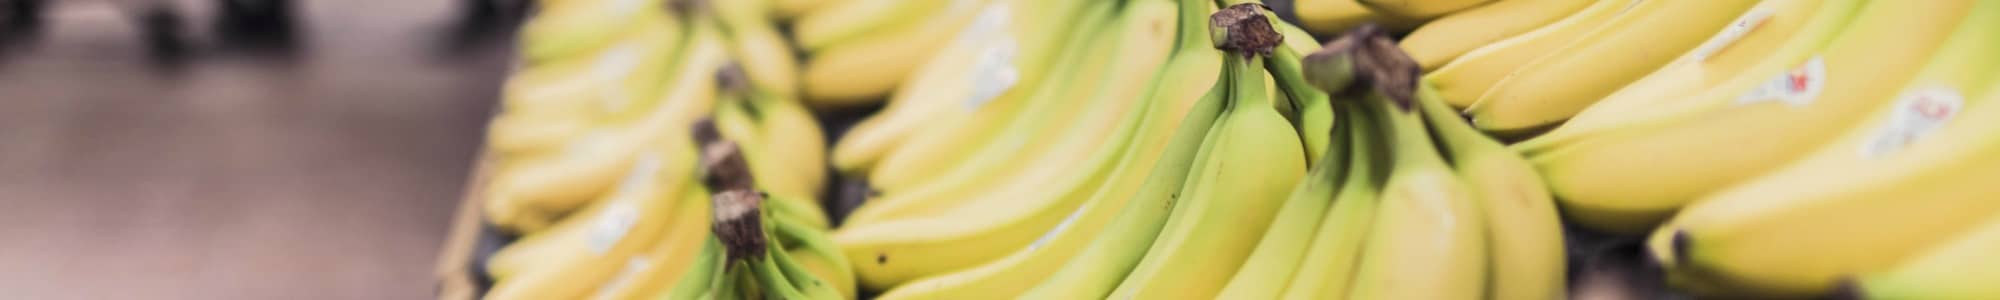 Banana banner image